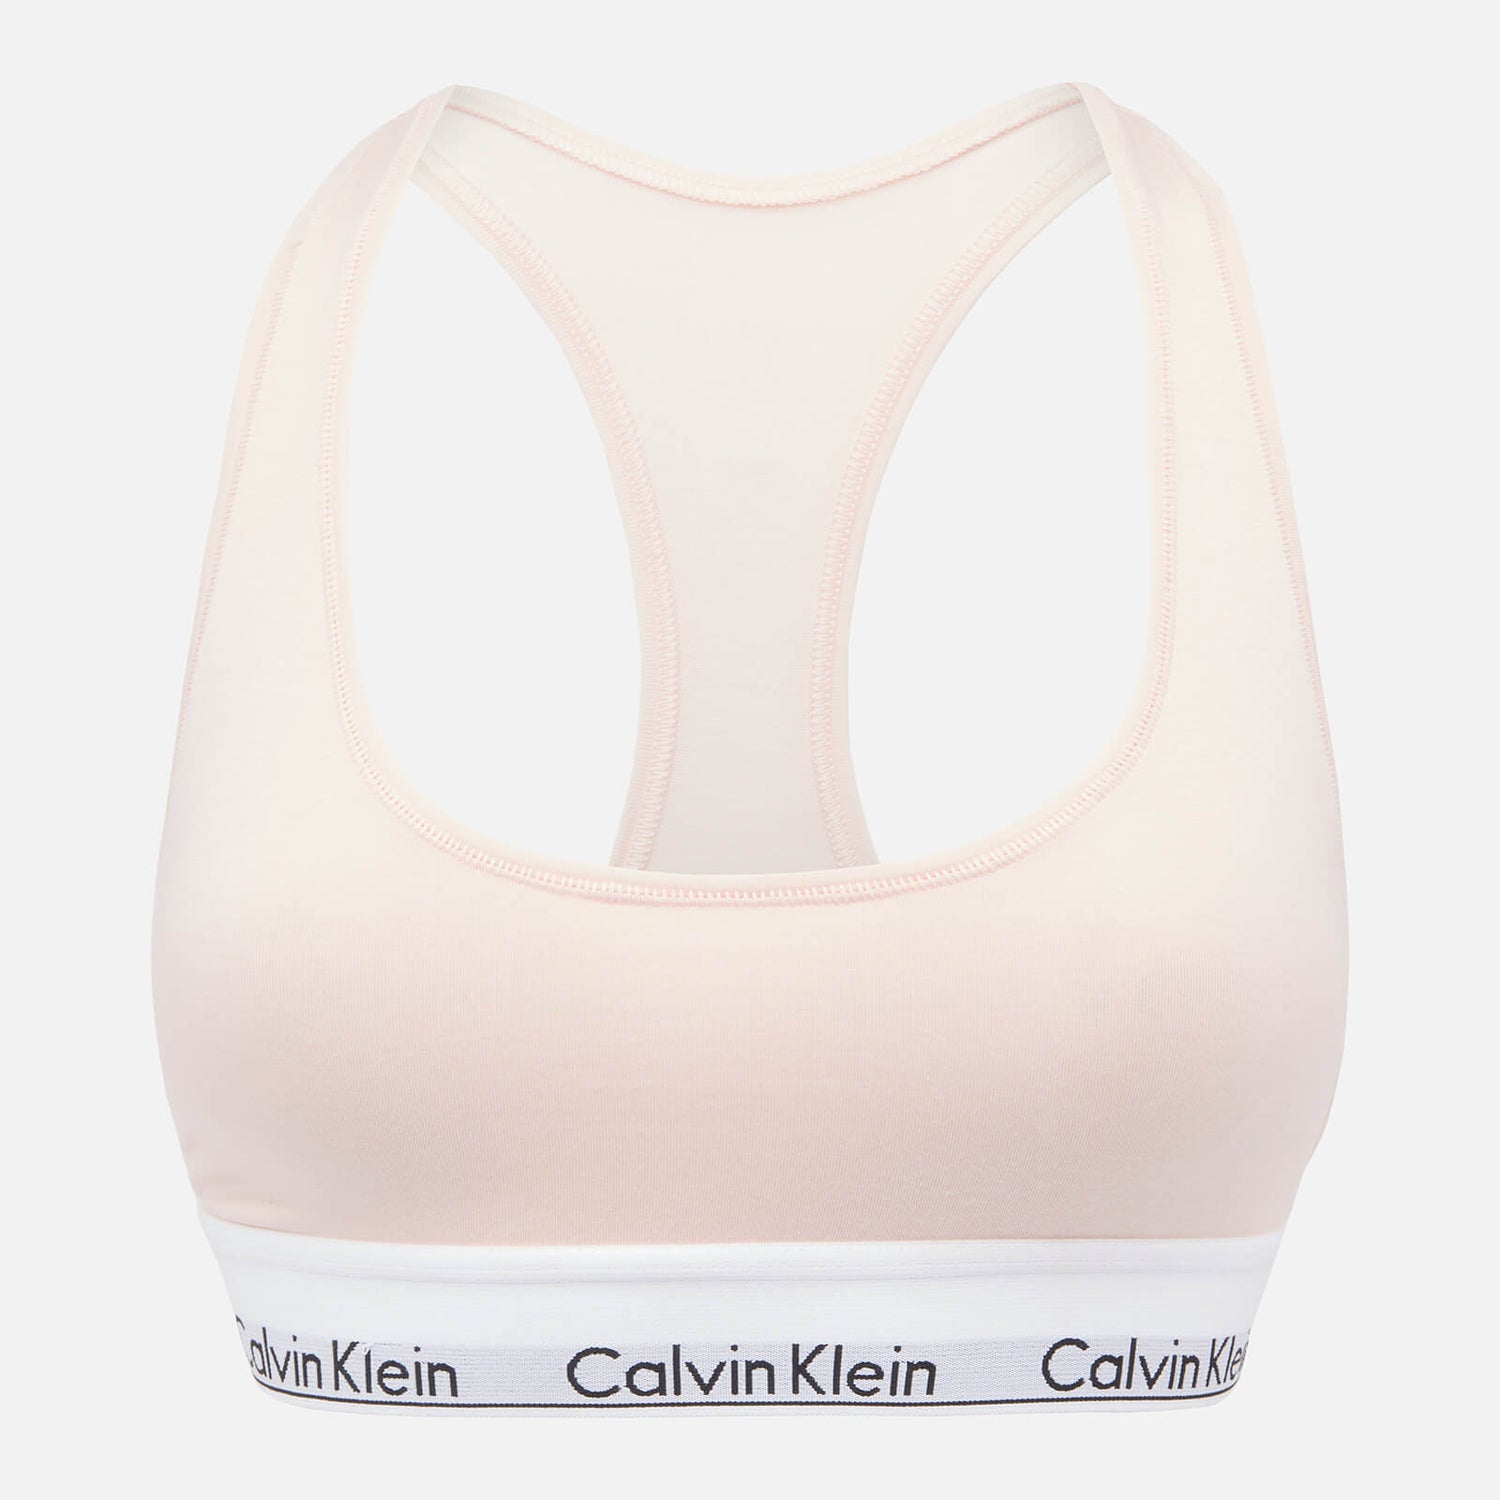 Calvin Klein Women's Modern Cotton Bralette - Nymphs Pink